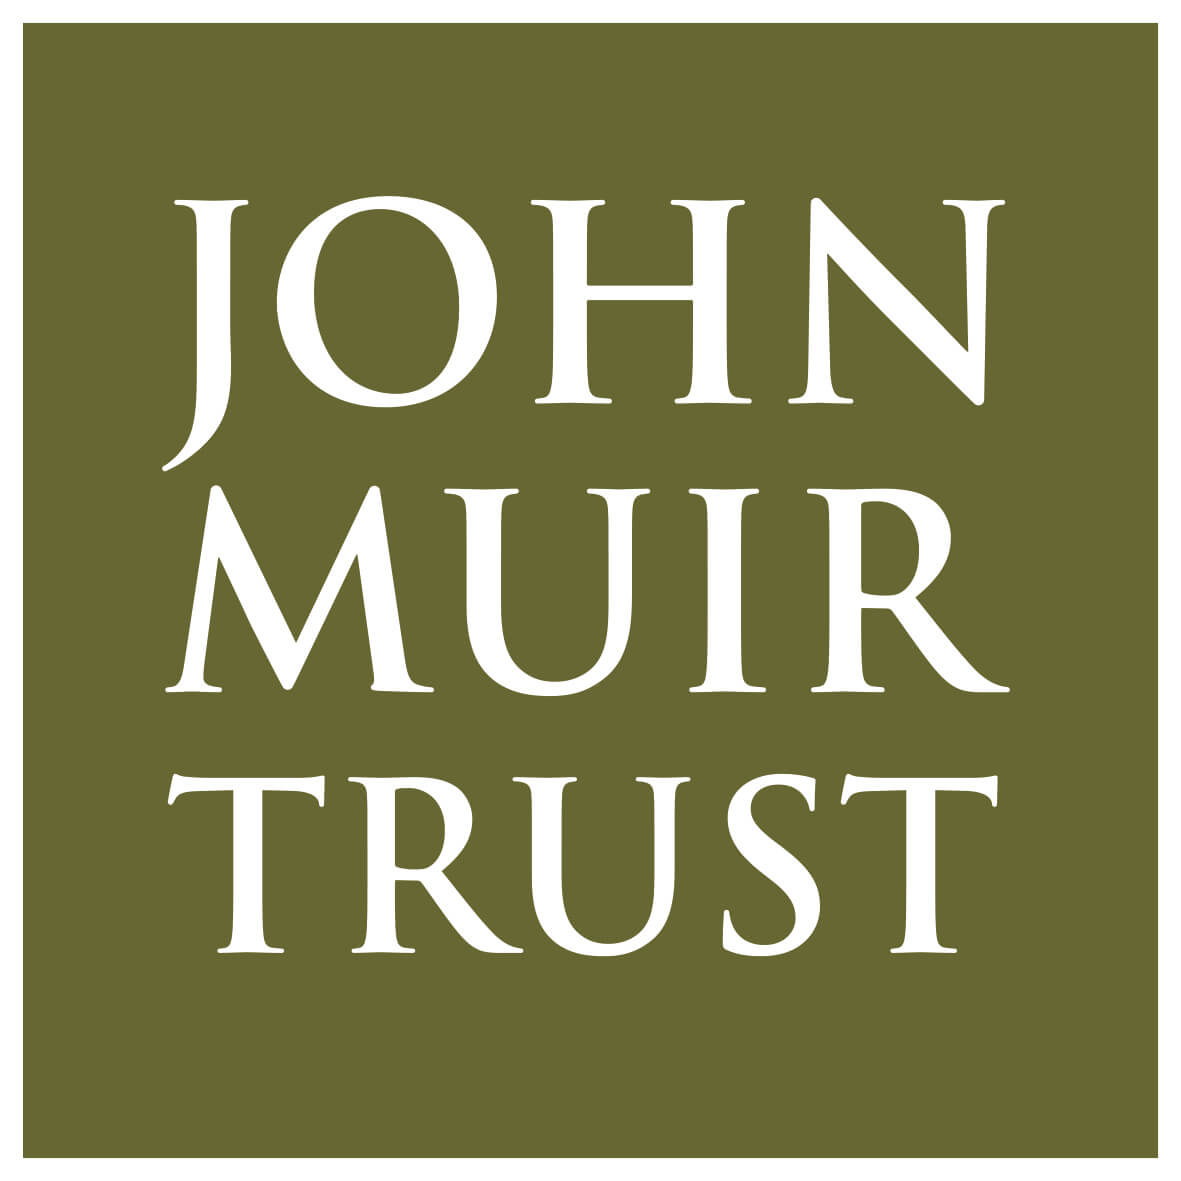 John Muir trust